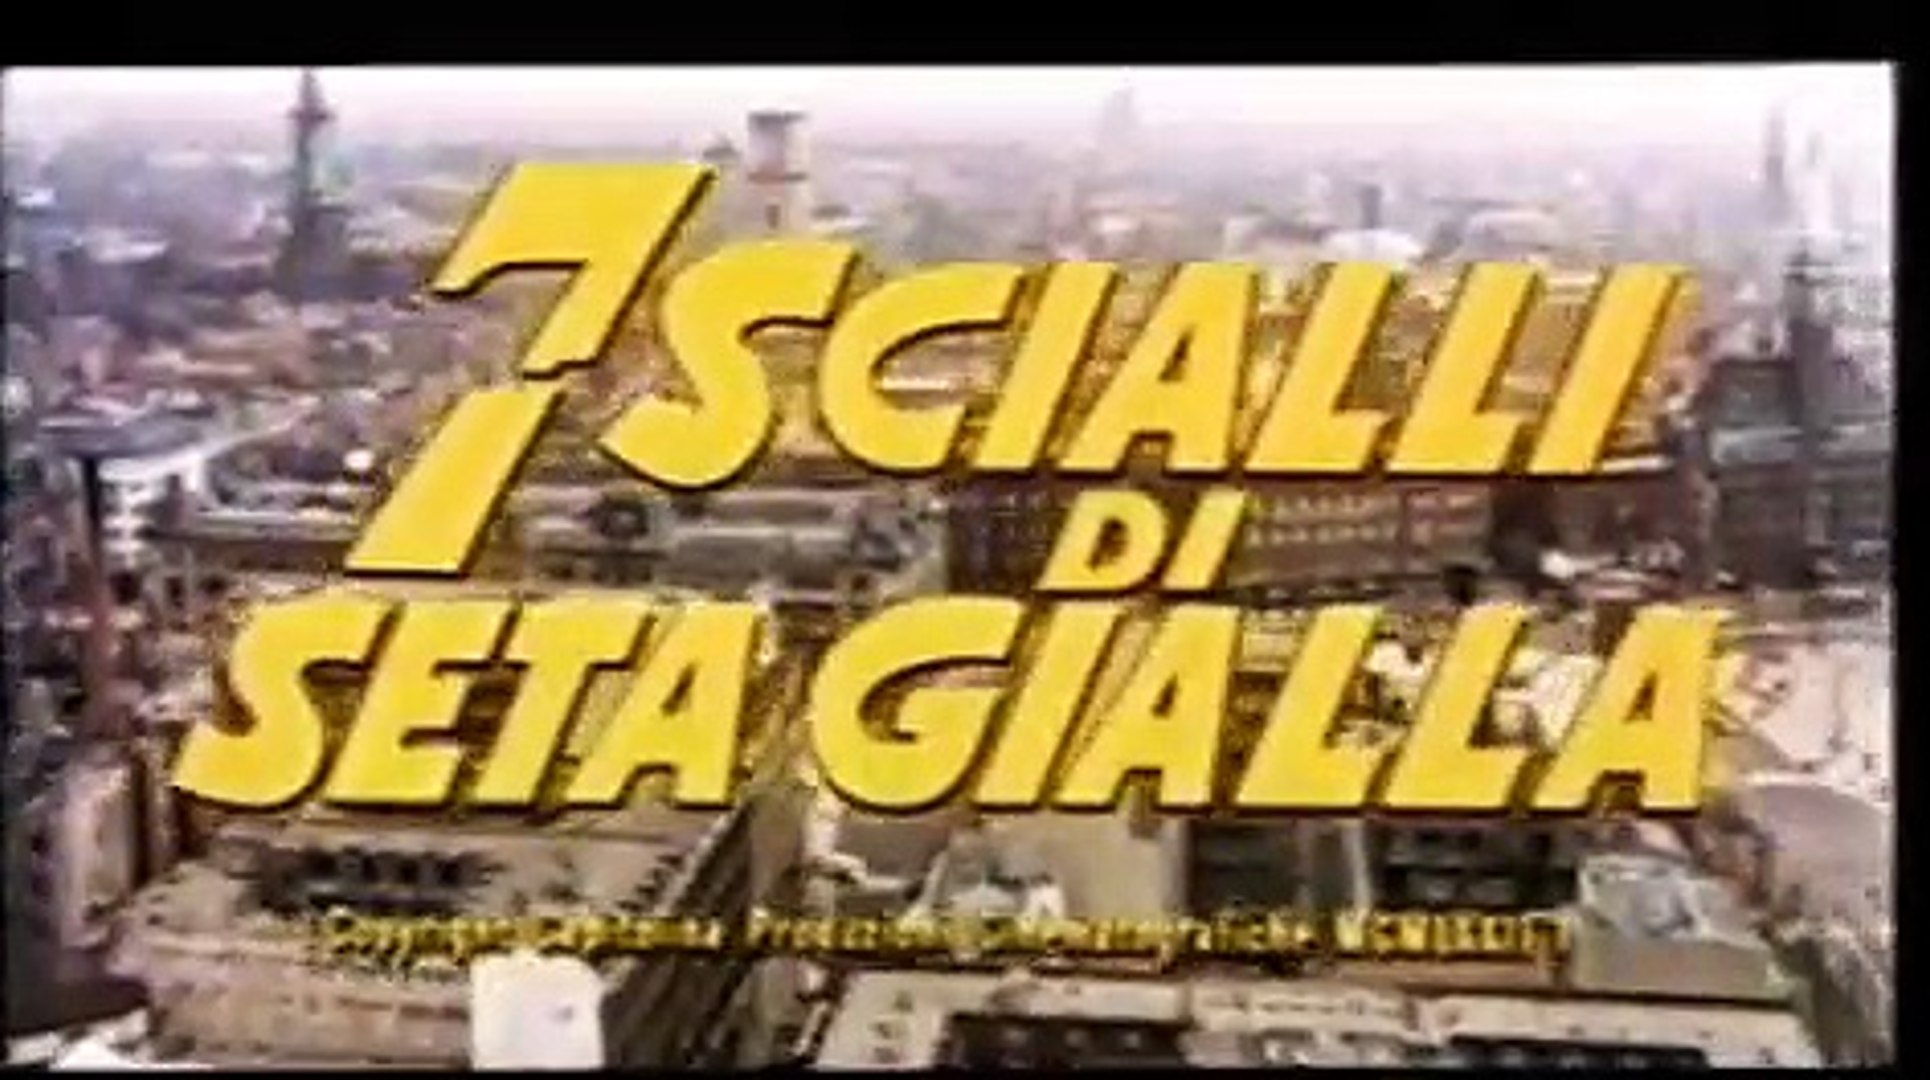 Sette Scialli di Seta Gialla - TRAILER - Sergio Pastore - Vídeo Dailymotion